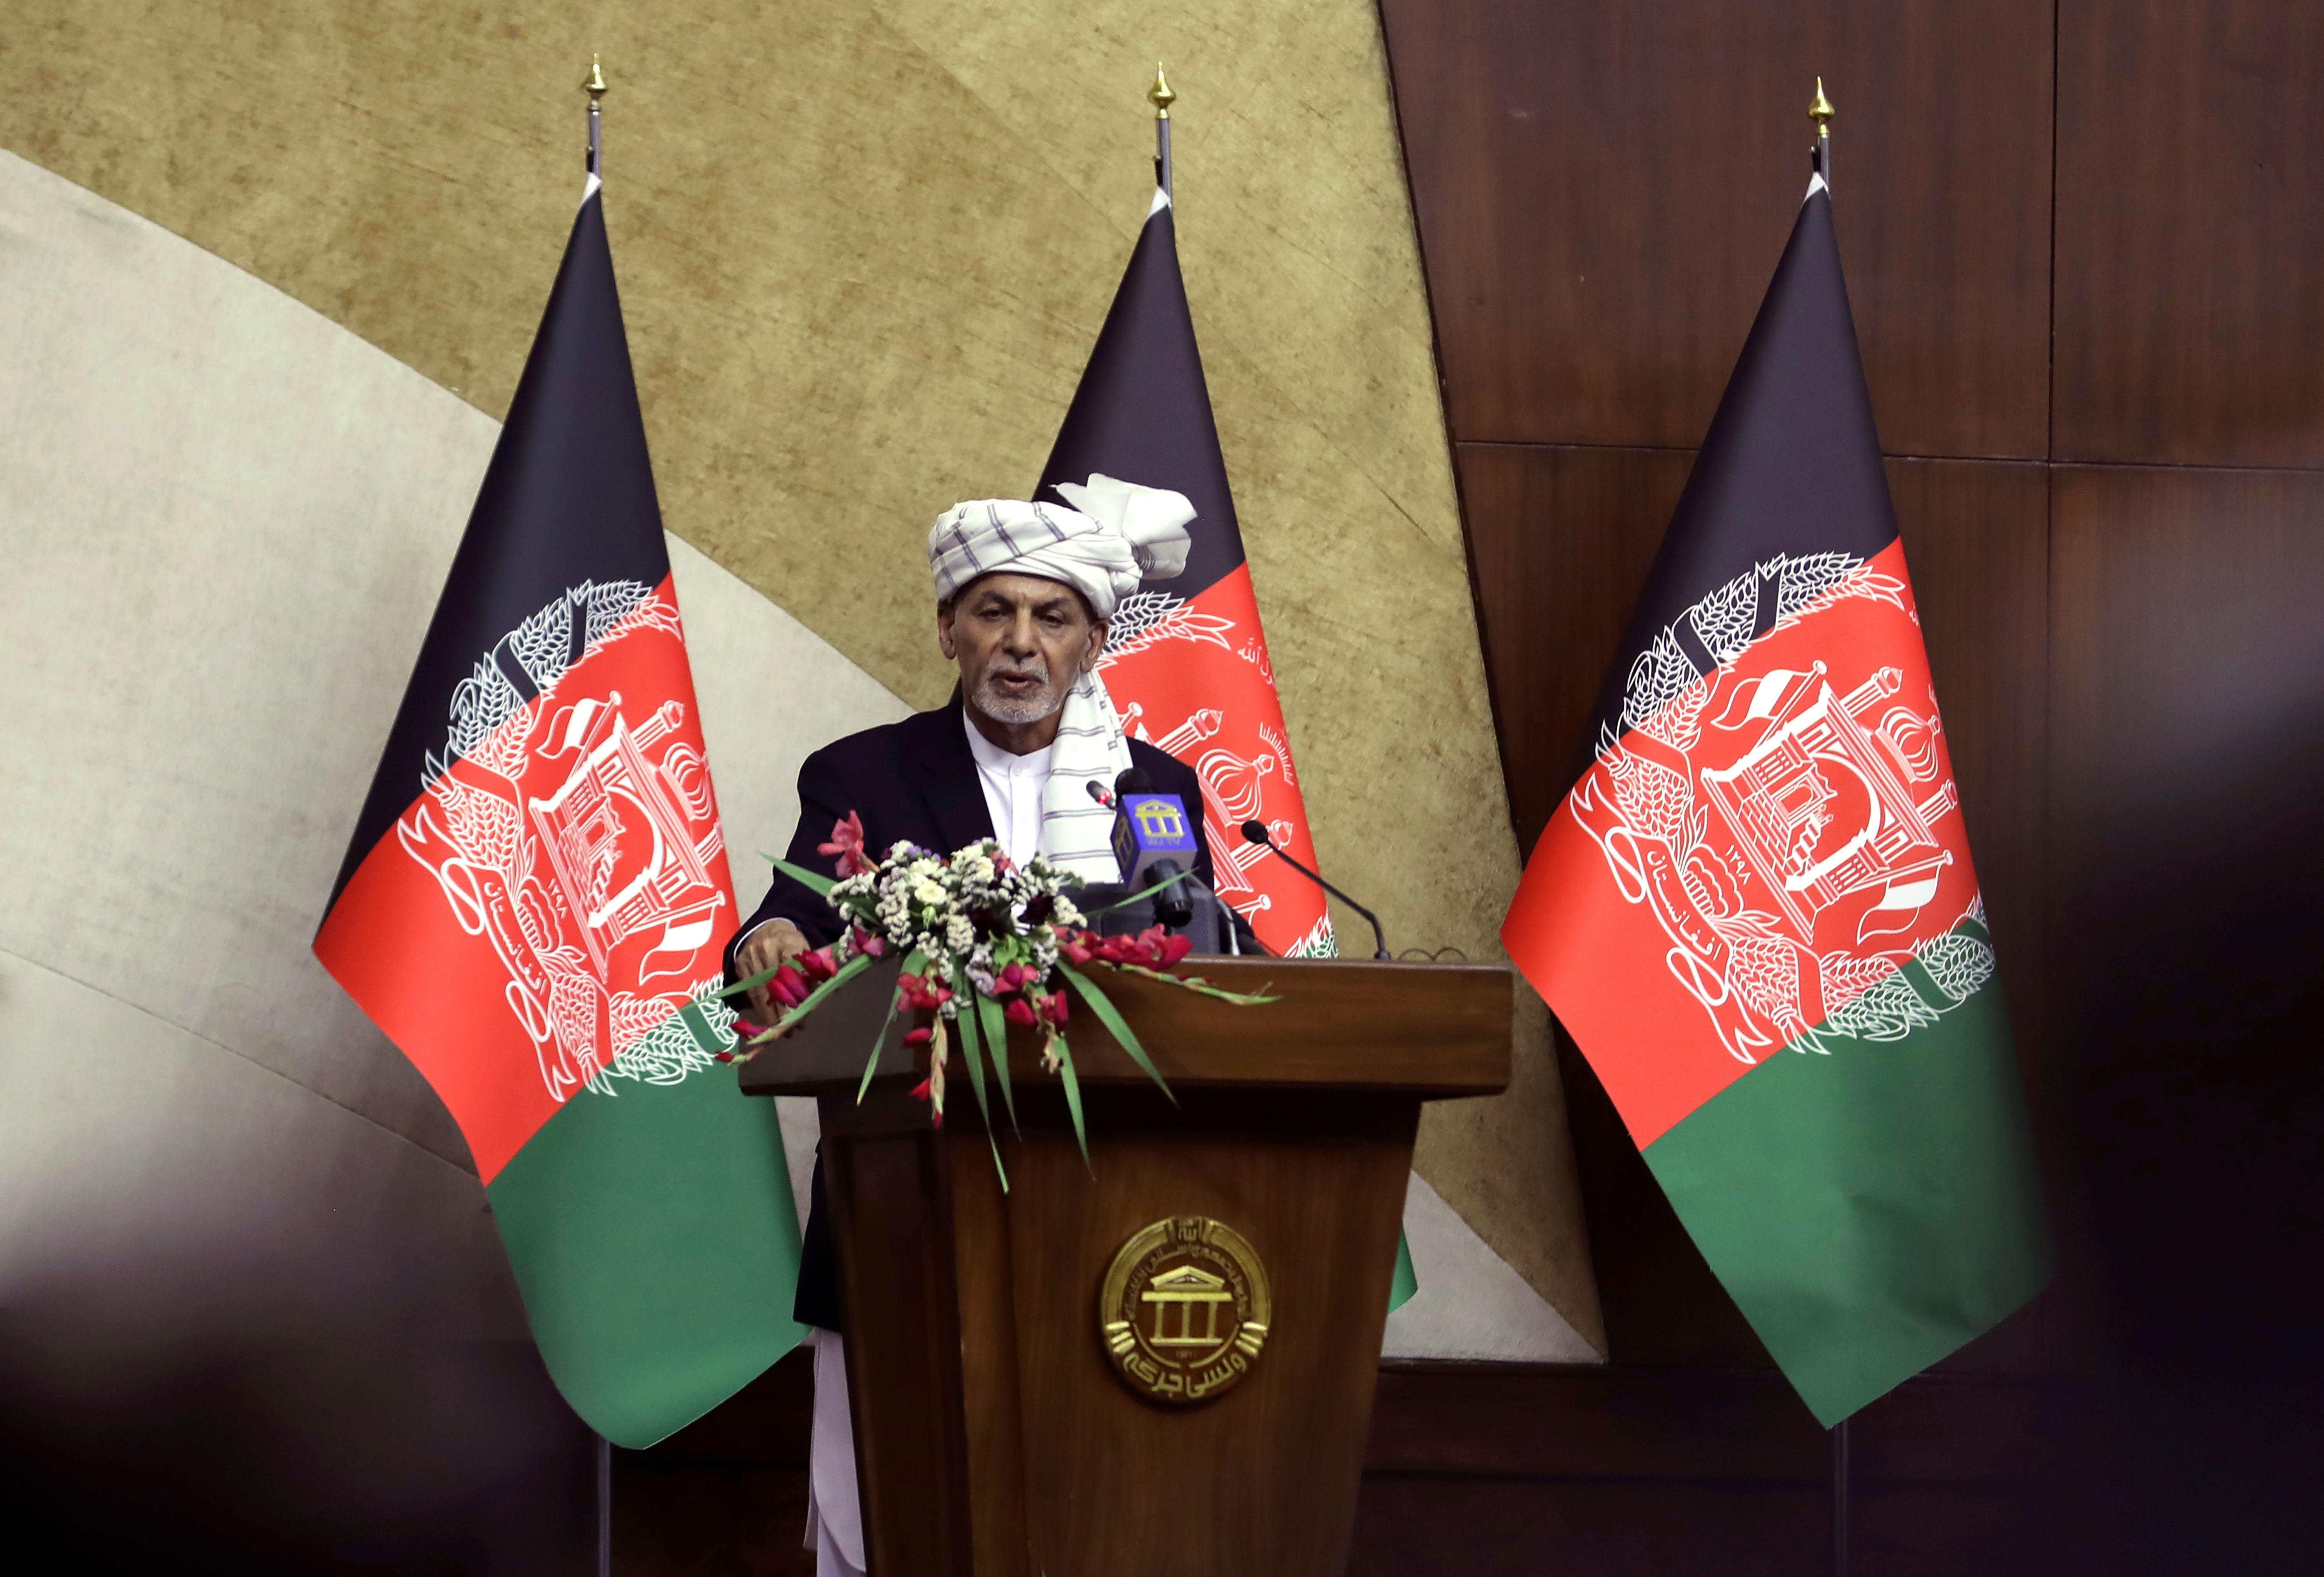 Afghanistan's President Ashraf Ghani speaks at a meeting in Kabul, Afghanistan, on August 2, 2021.